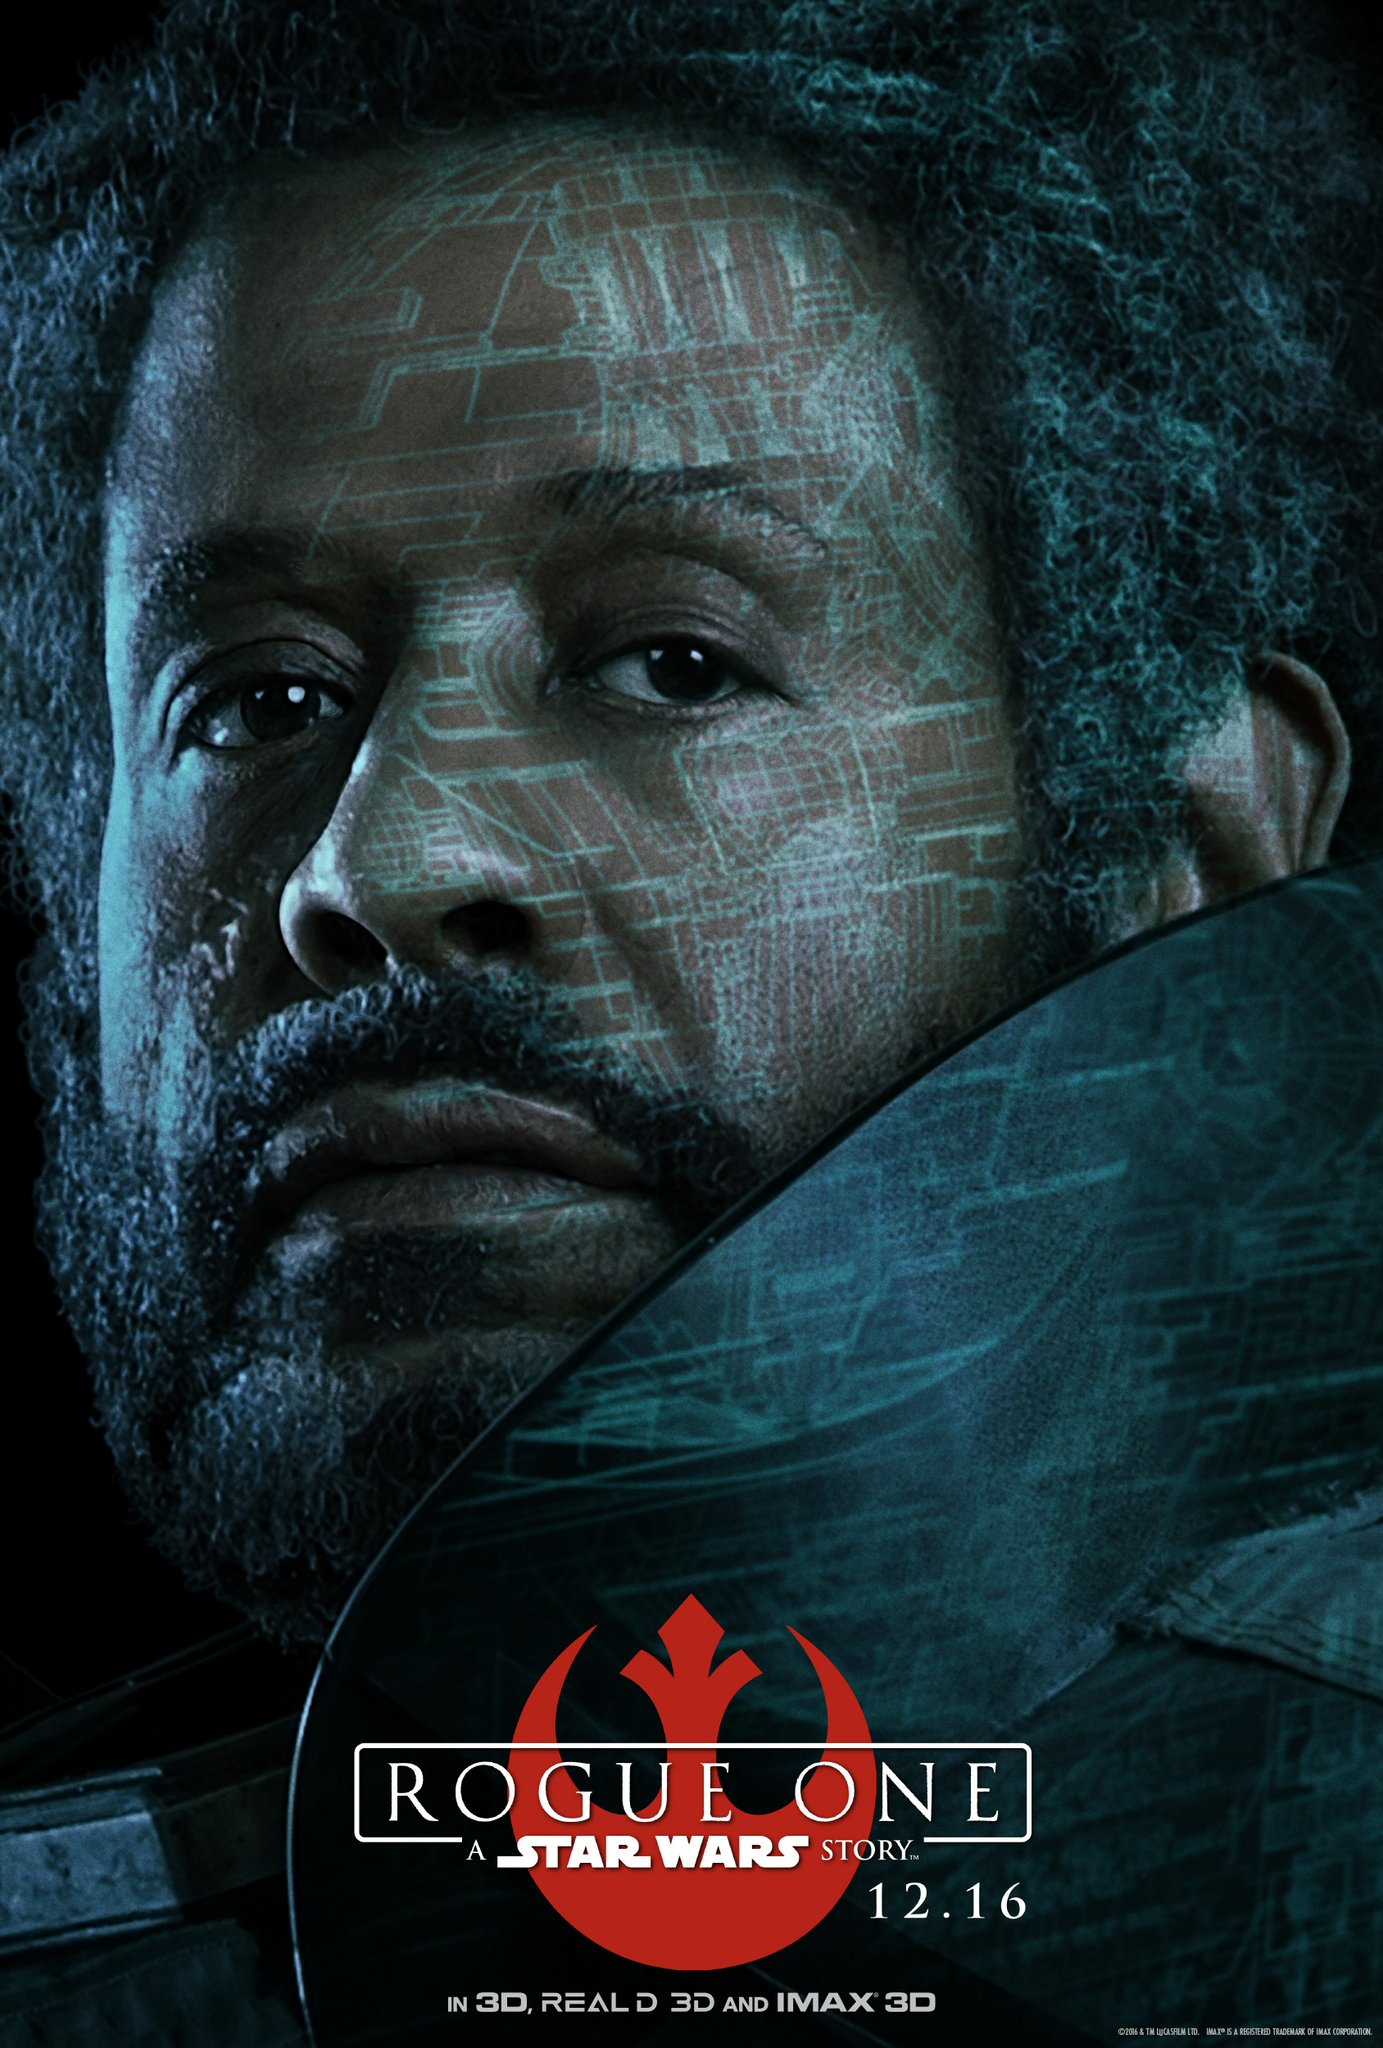 Saw Gerrera (Forest Whitaker) egy Birodalom ellenes terrorista, aki egykor partizánként harcolt a klónháborúban. A felkelés radikális szárnyát képviseli. A karaktert még maga George Lucas találta ki a soha meg nem valósult élőszereplős Star Wars: Underworld tévésorozathoz.